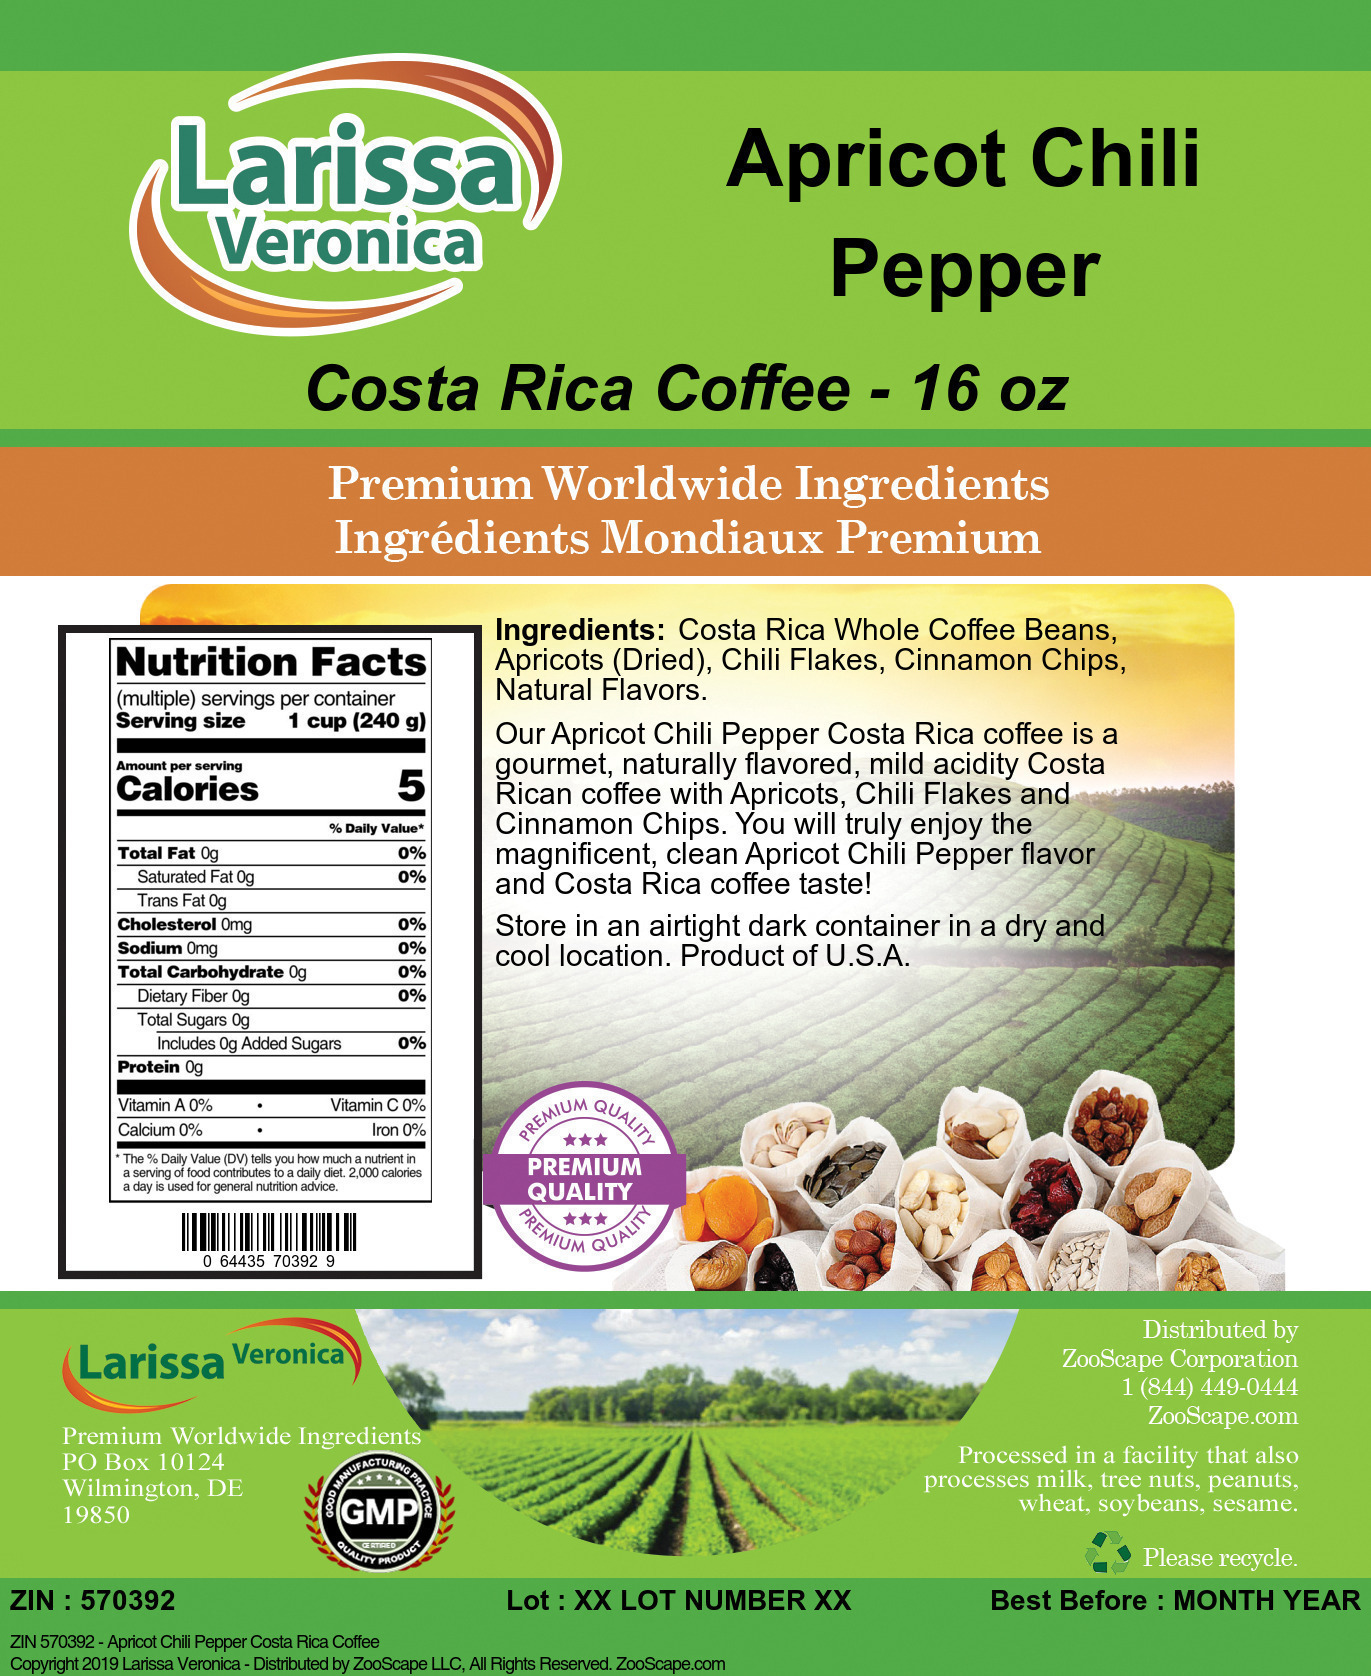 Apricot Chili Pepper Costa Rica Coffee - Label